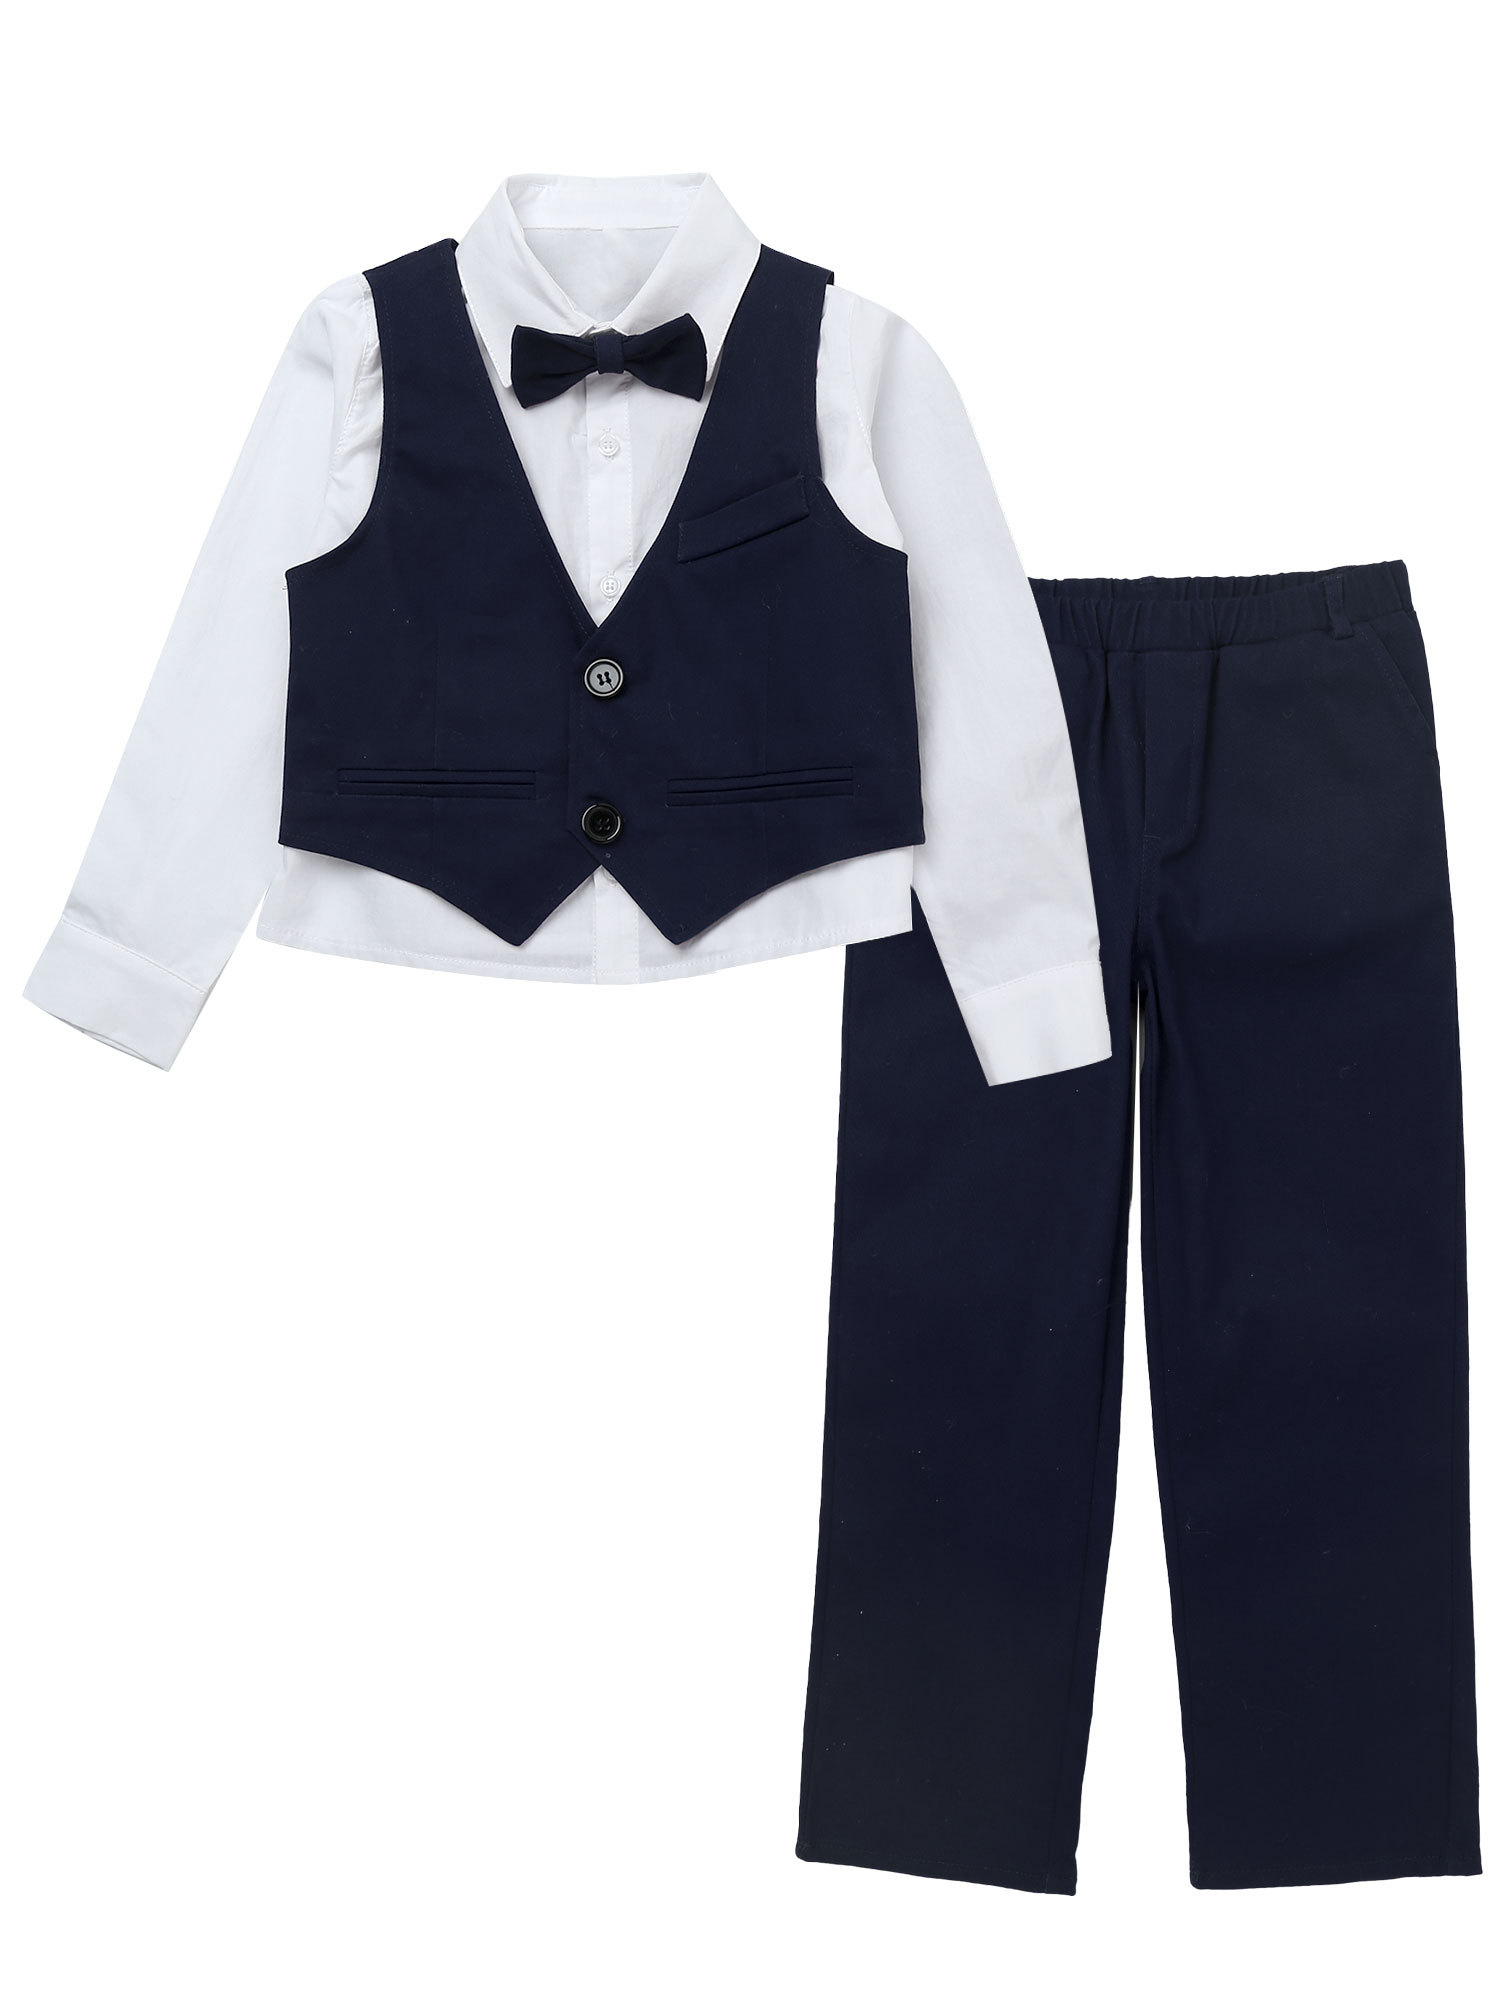 iiniim Kids Boys Long Sleeve Shirt with Vest Pants Bow Tie Set Wedding ...